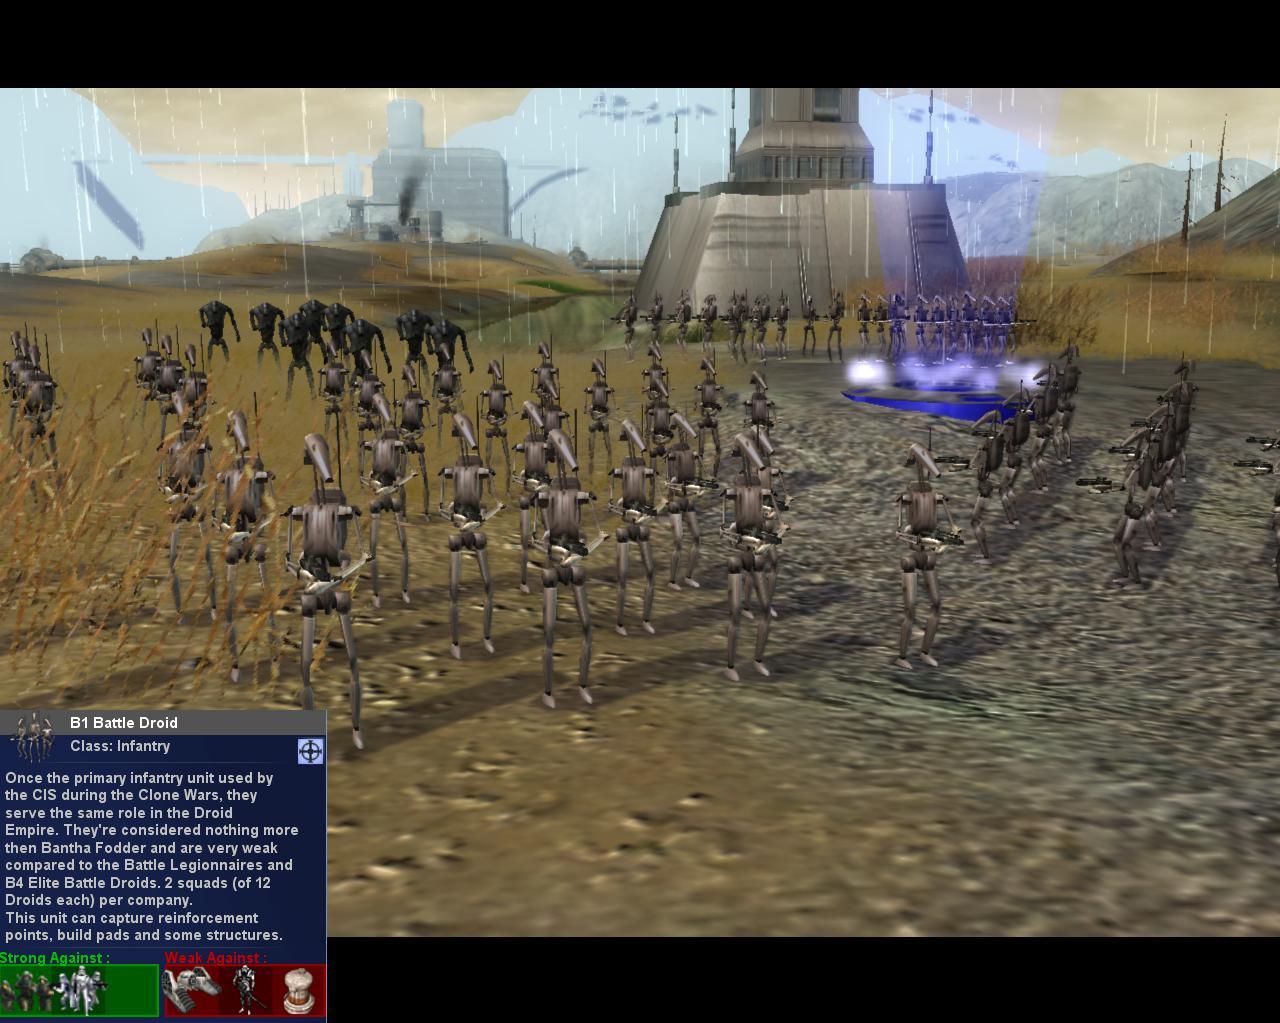 Droid Empire B1 Battle Droids Image Mod Db